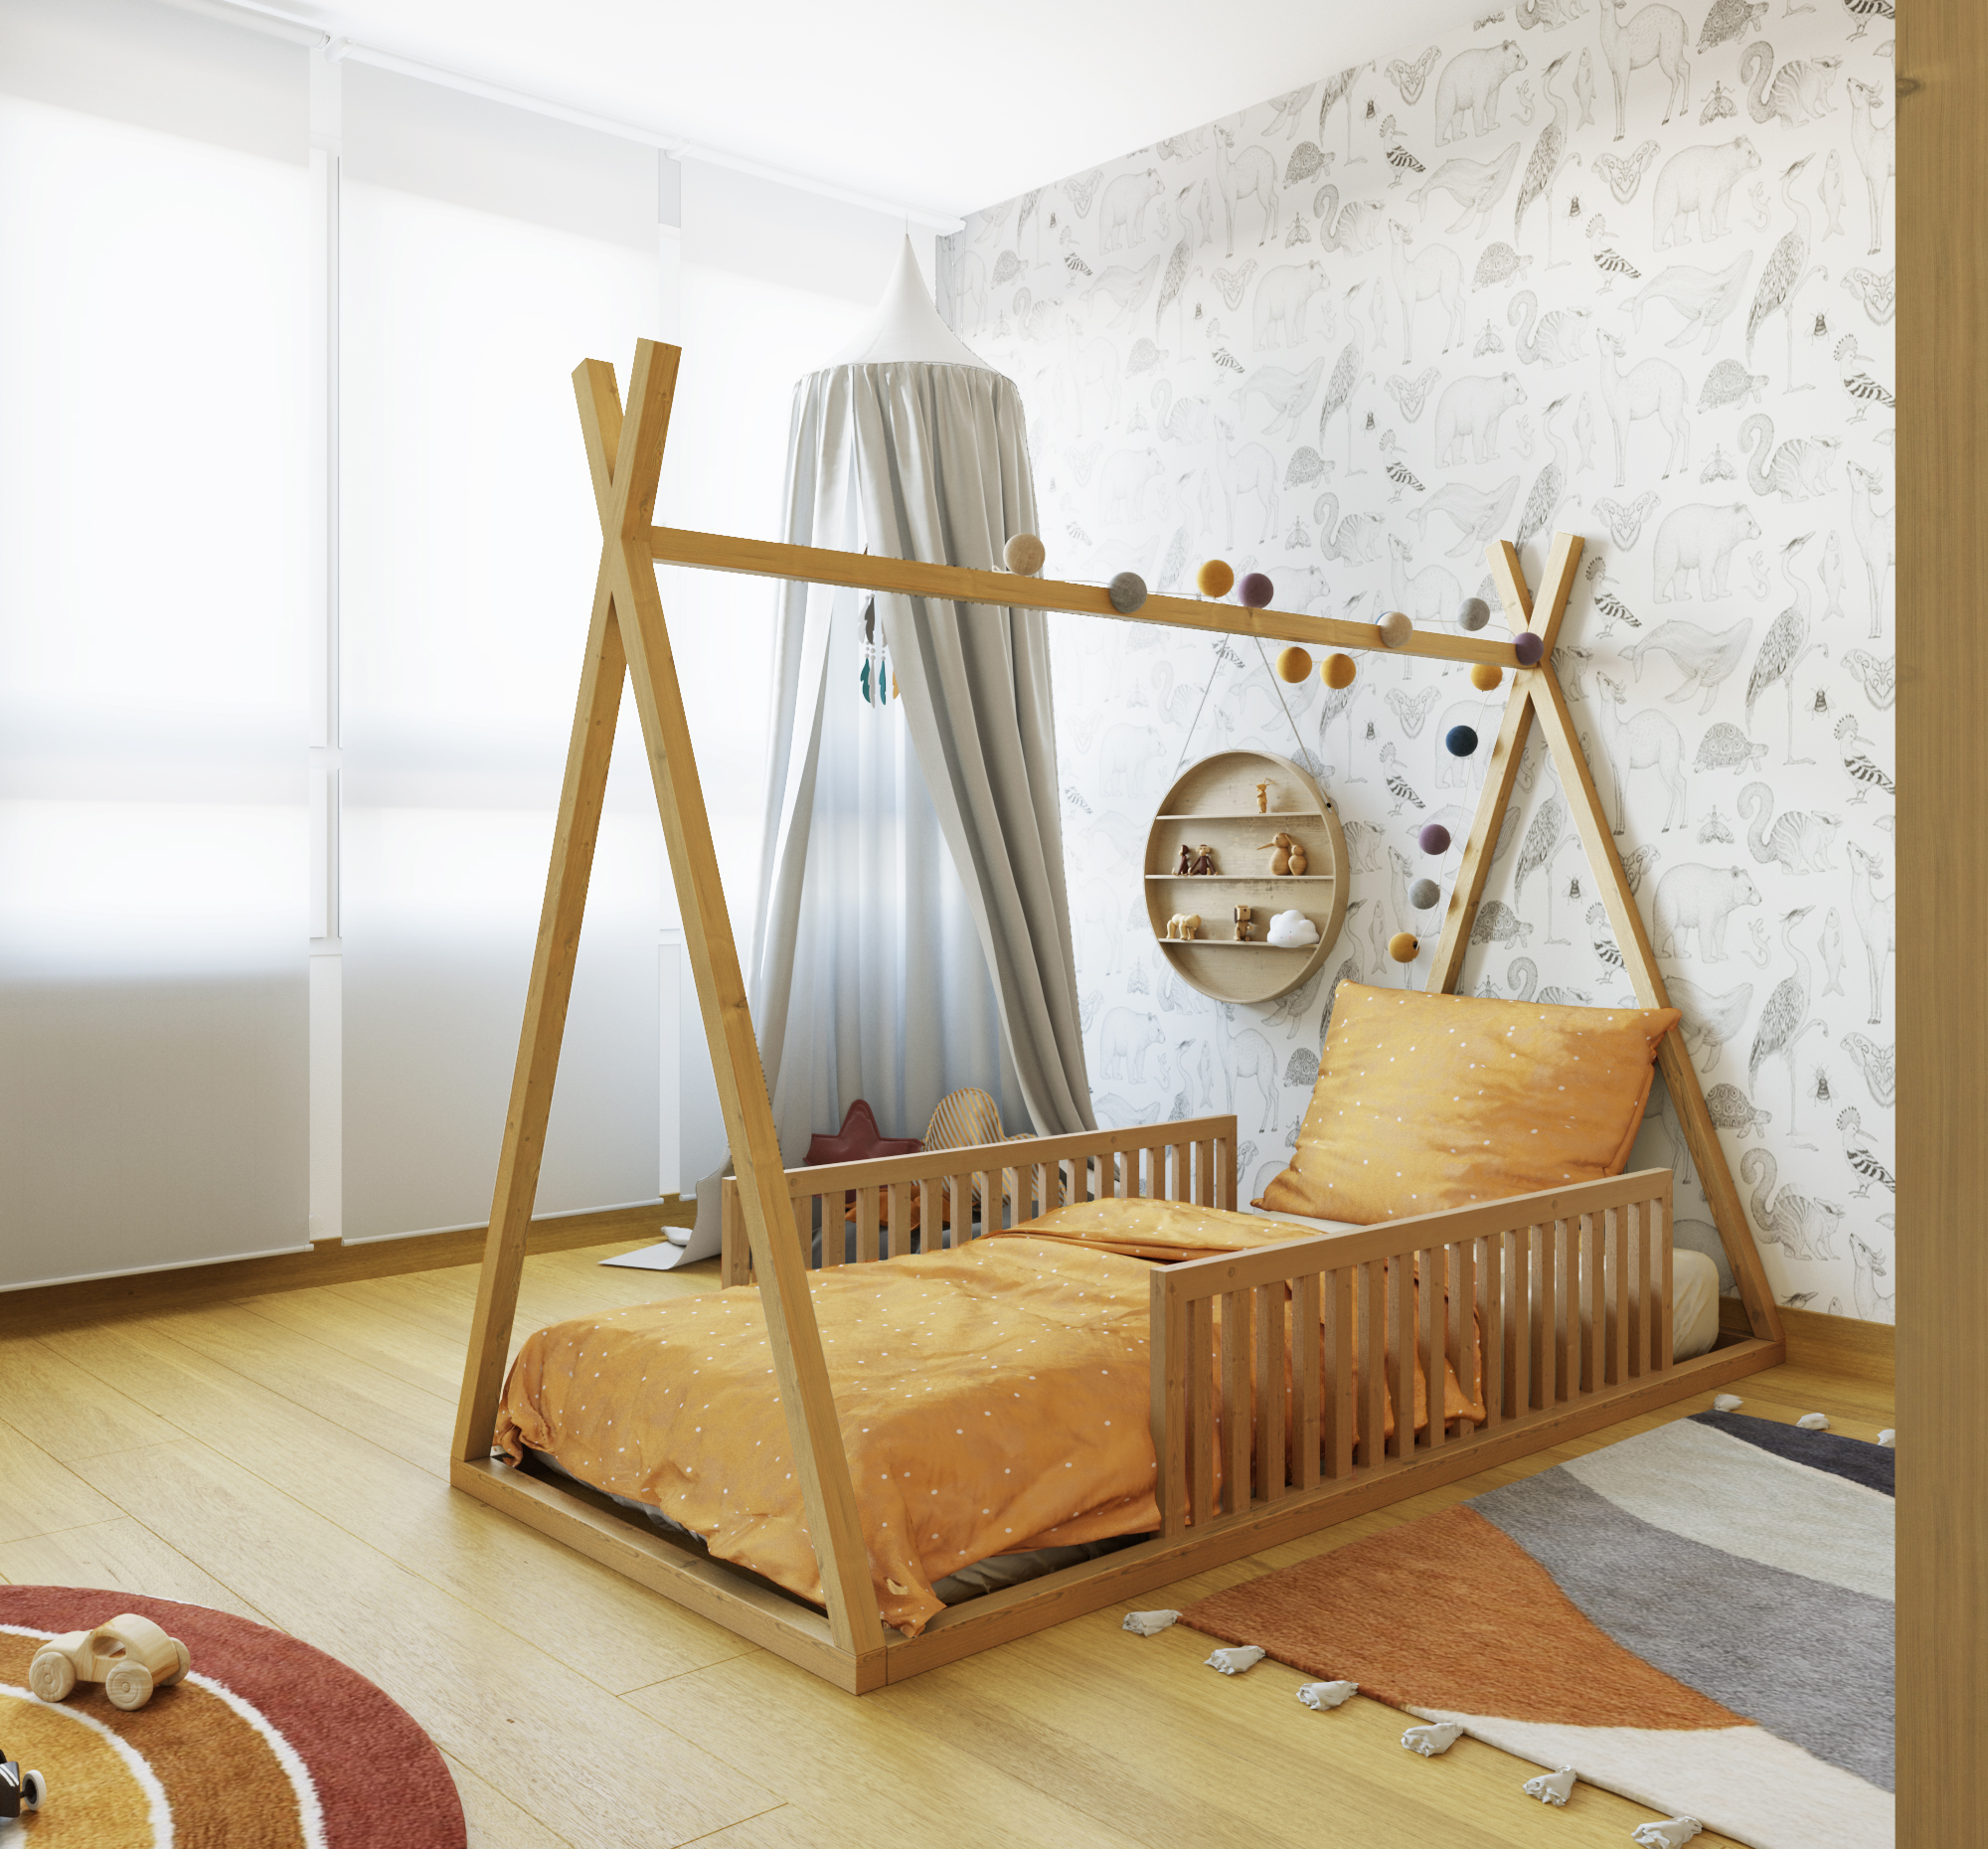 Las mejores alfombras para decorar un dormitorio juvenil  Decoración de  unas, Alfombras de vinilo, Decorar dormitorios